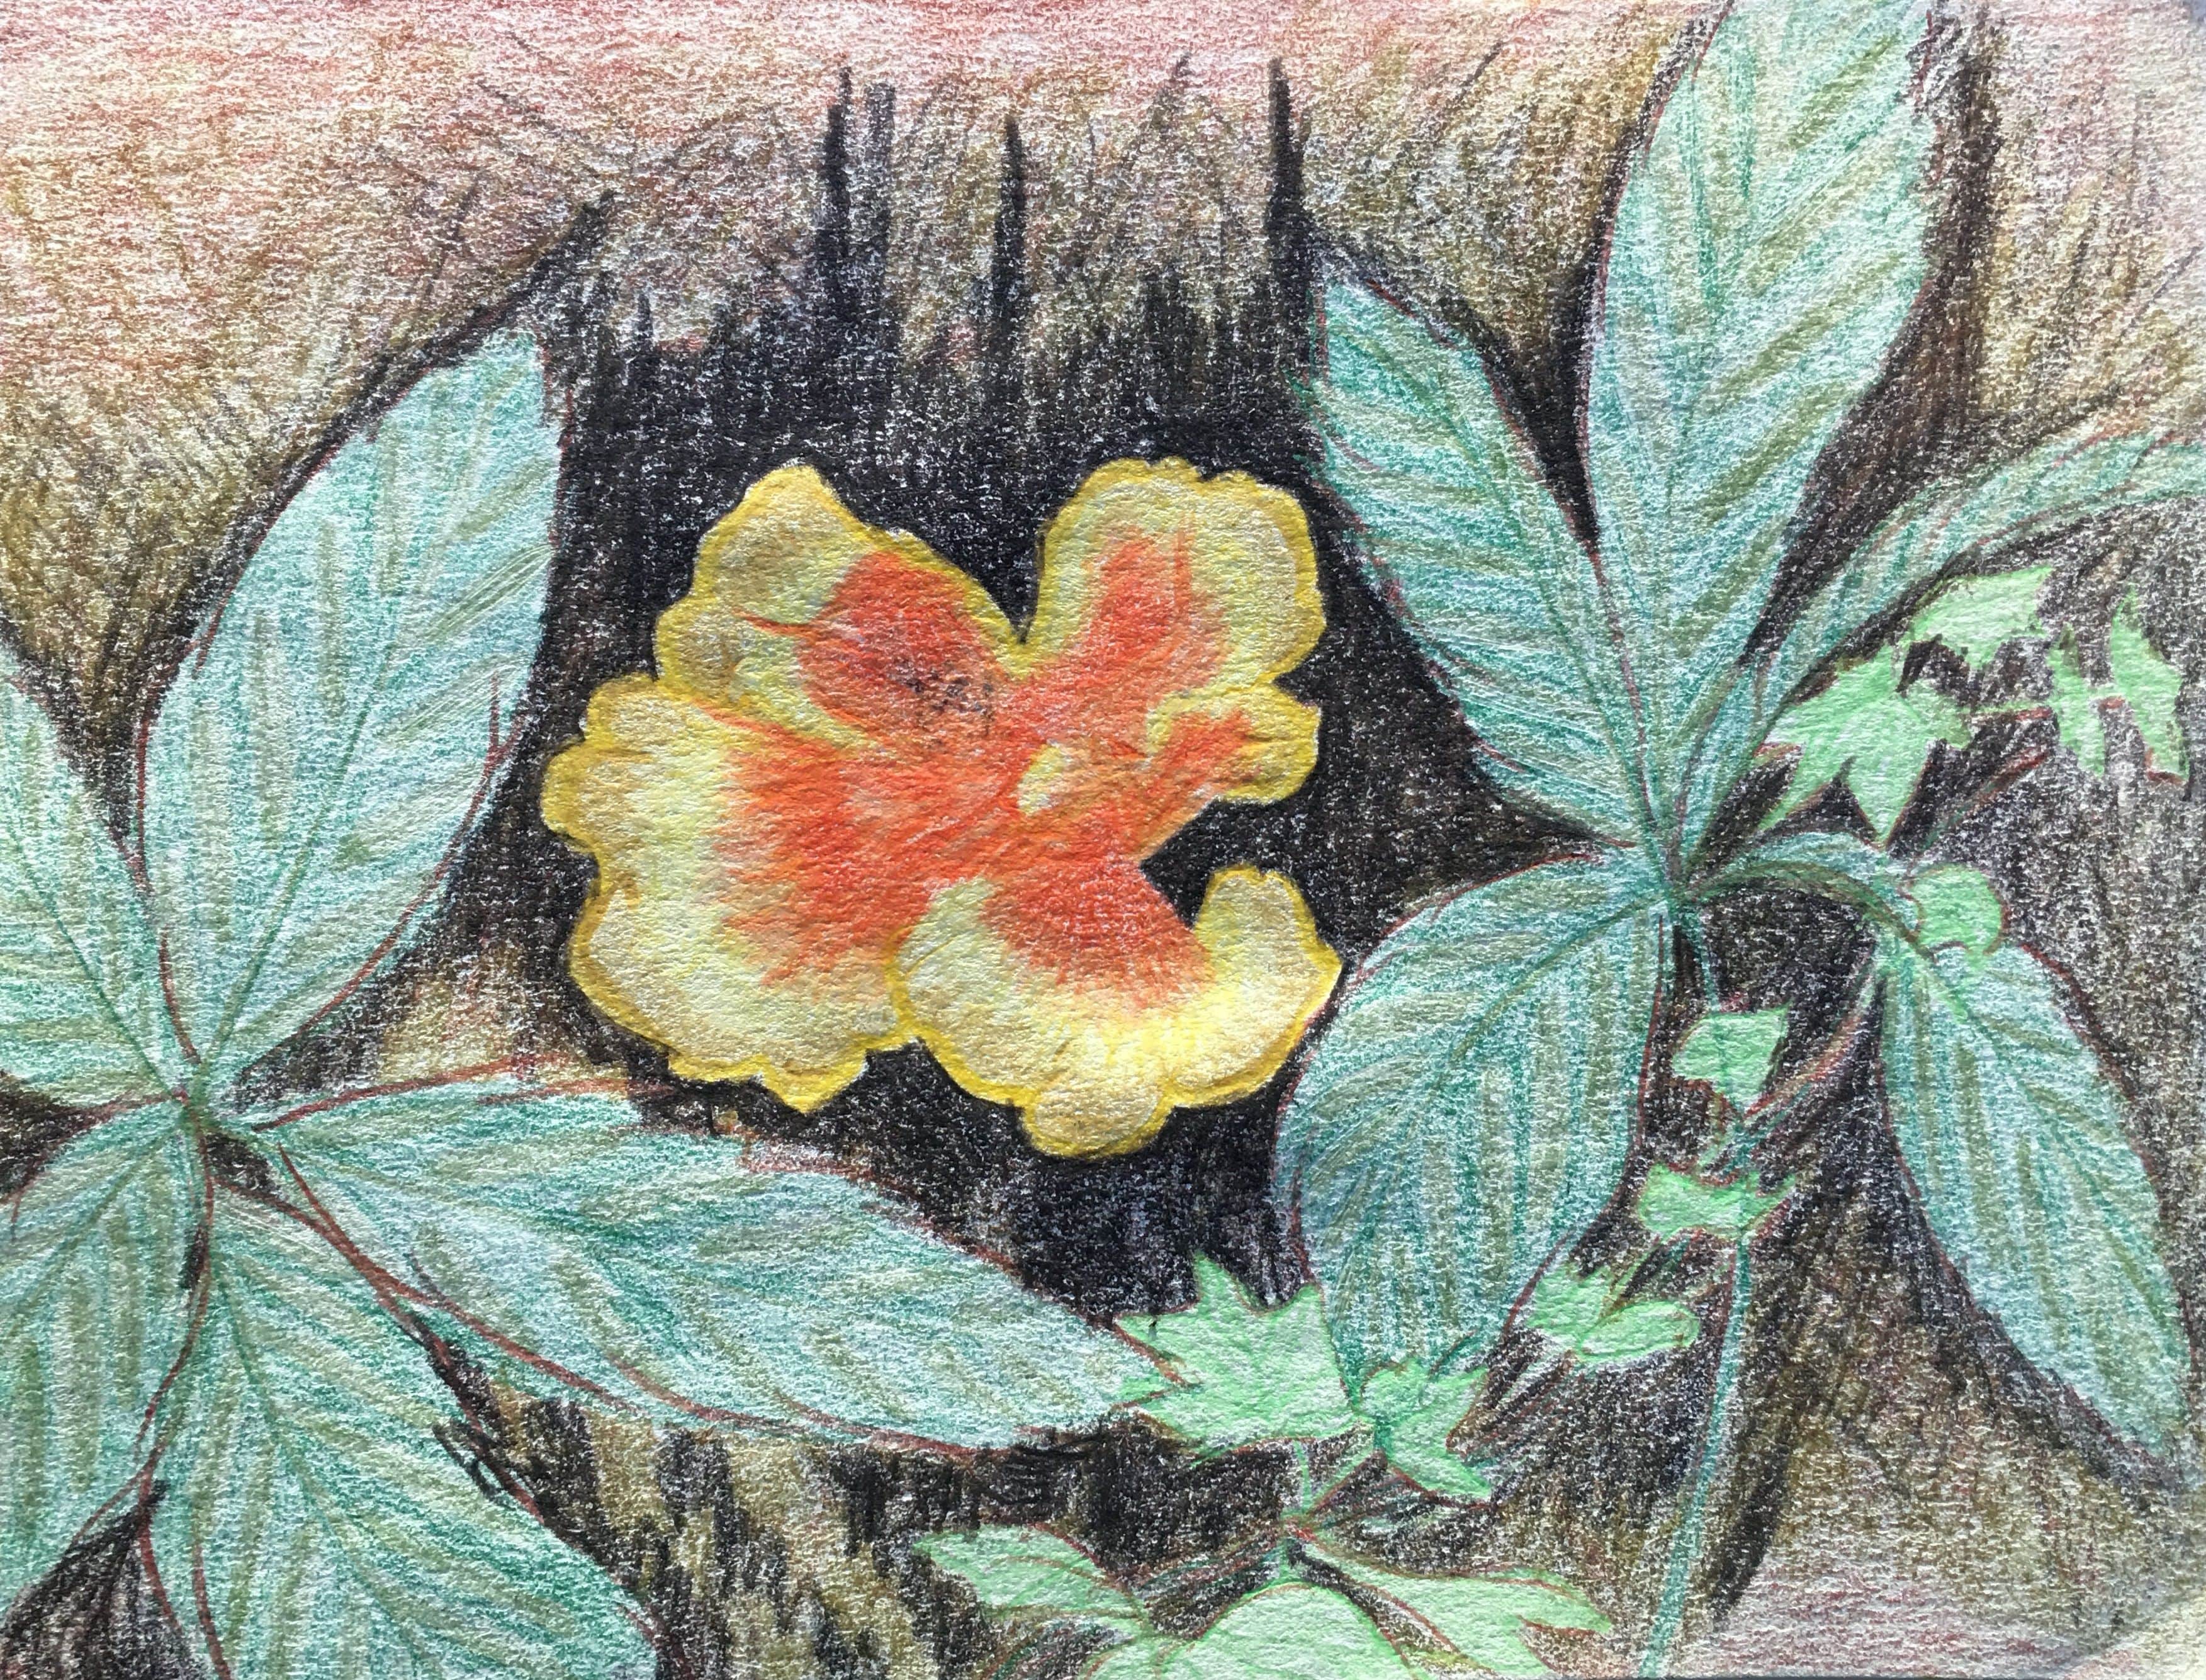 Orange Fungi, 2018
Colored Pencils on Paper
7.75"W x 6"H, Walli White, artist